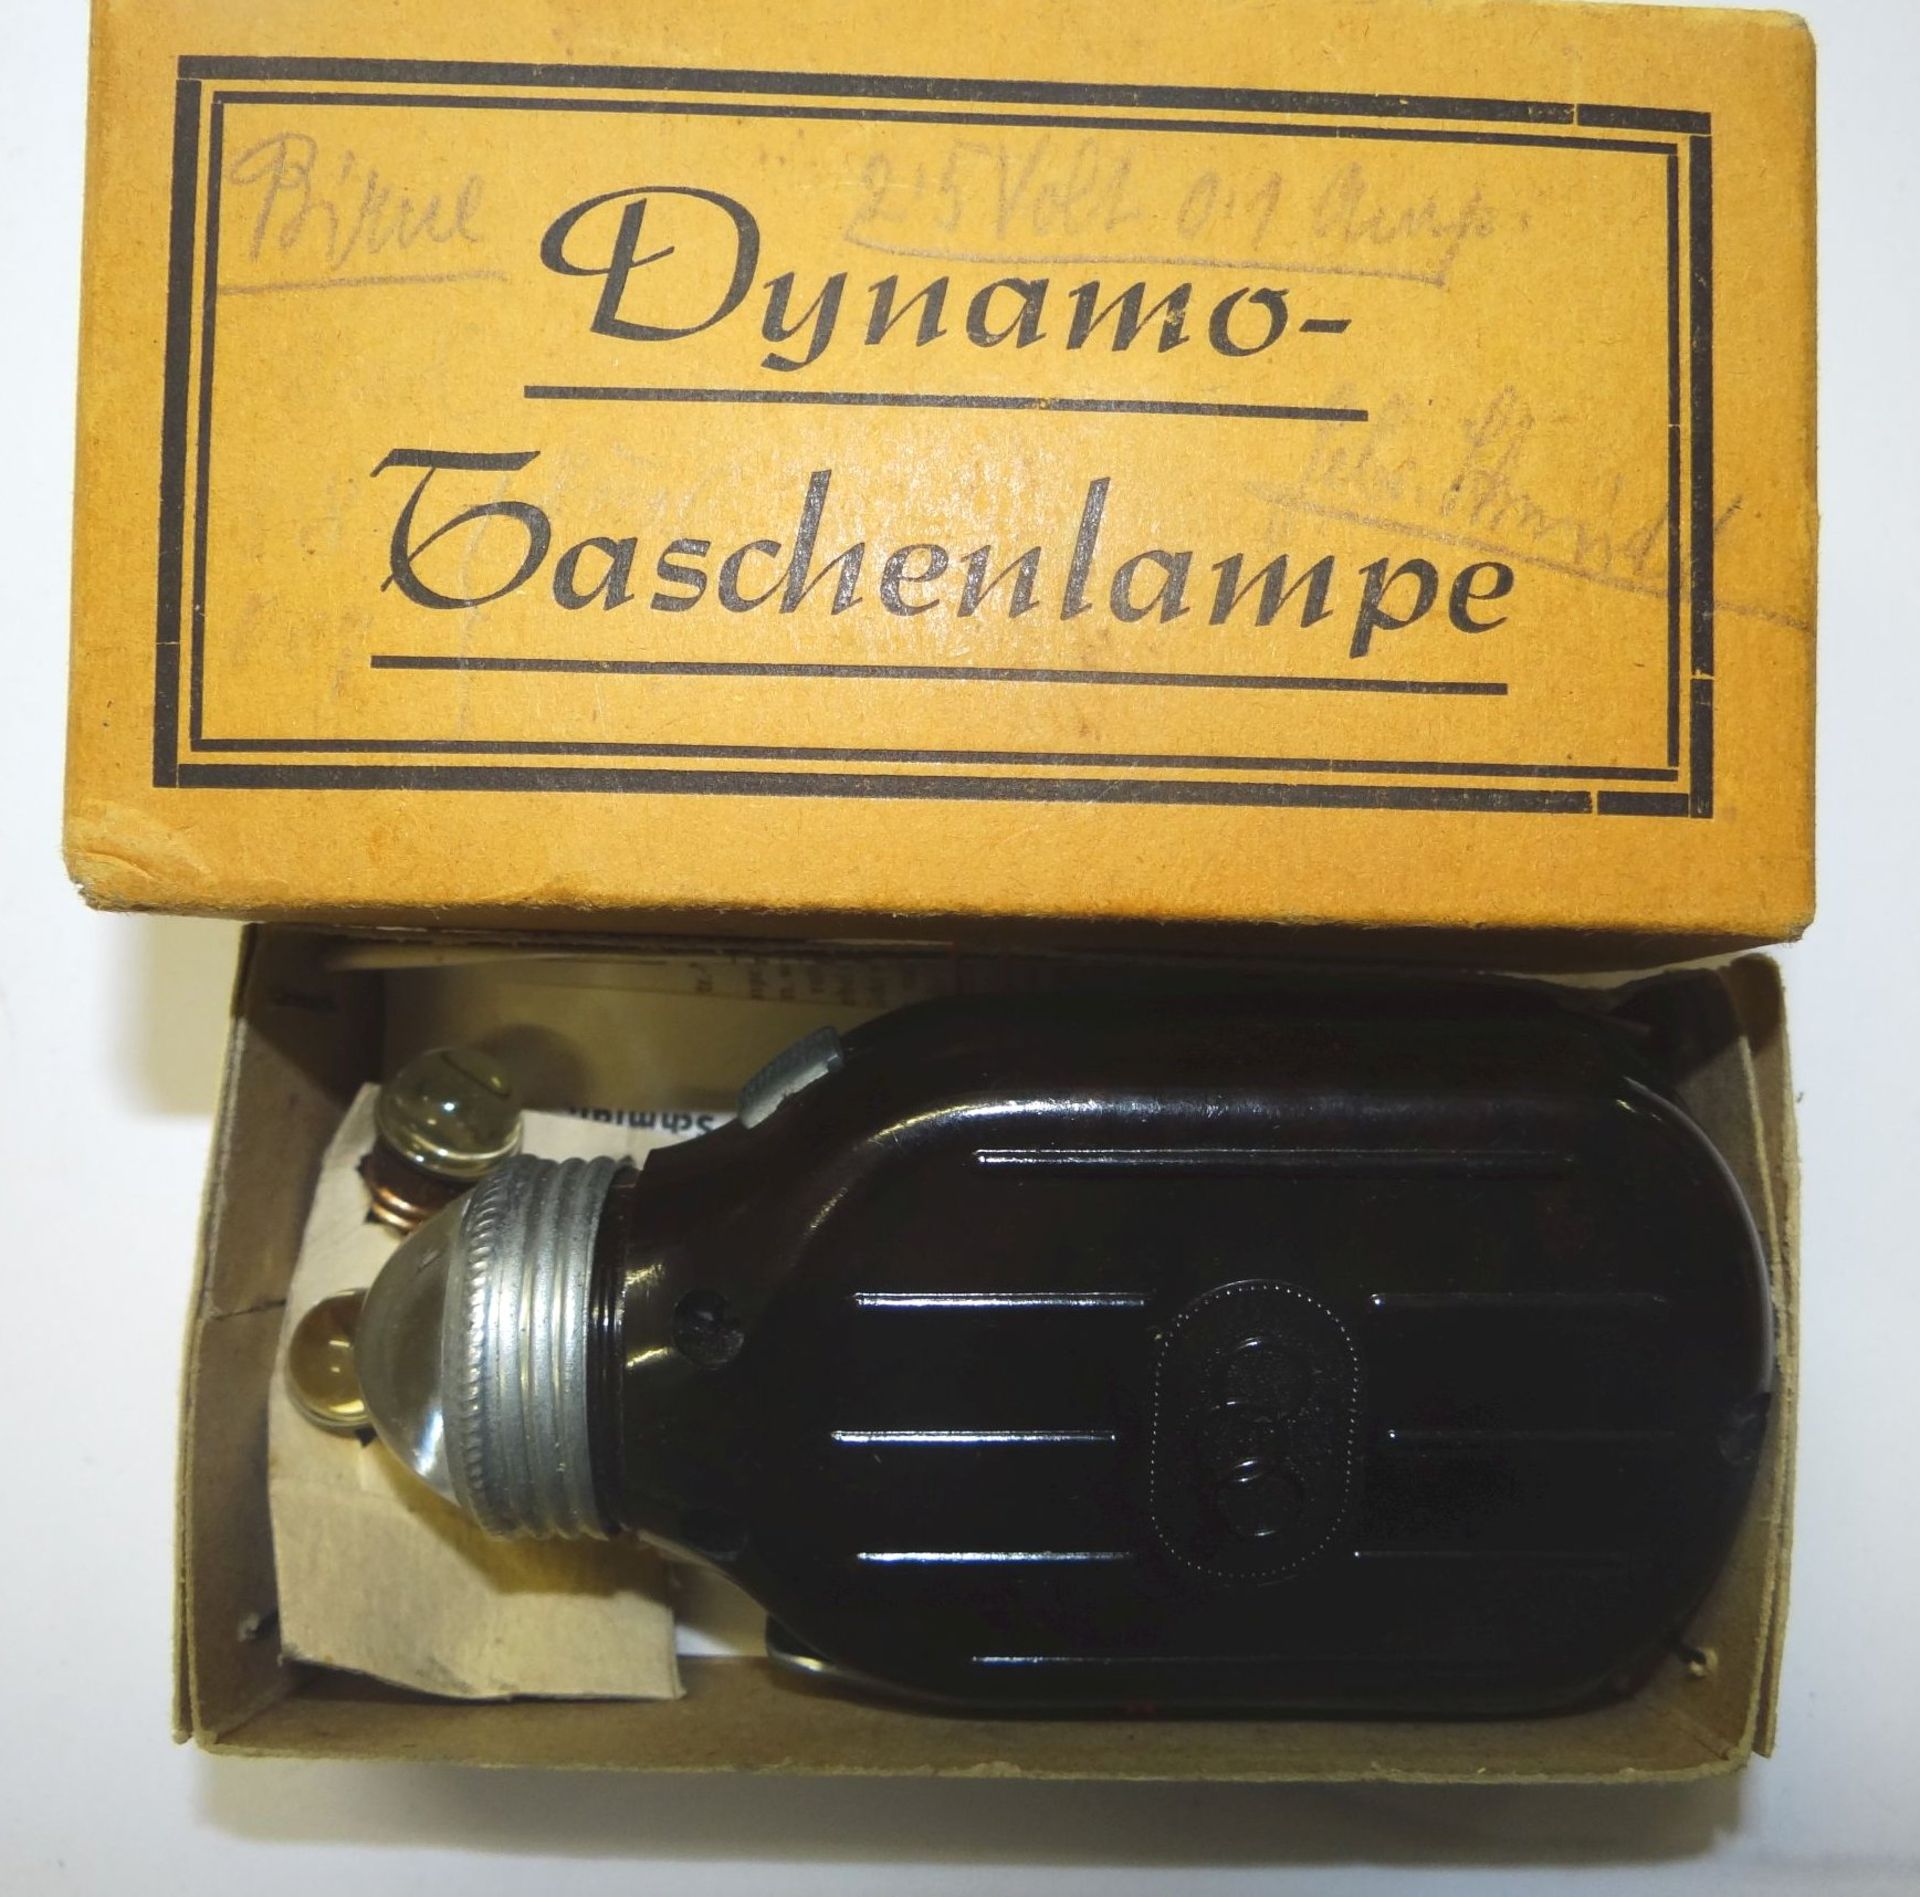 Dynamo-Handtaschenlampe in orig. Karton, Beschreibung, Ersatzbirnen, neuwertig und funktioniert - Bild 2 aus 4